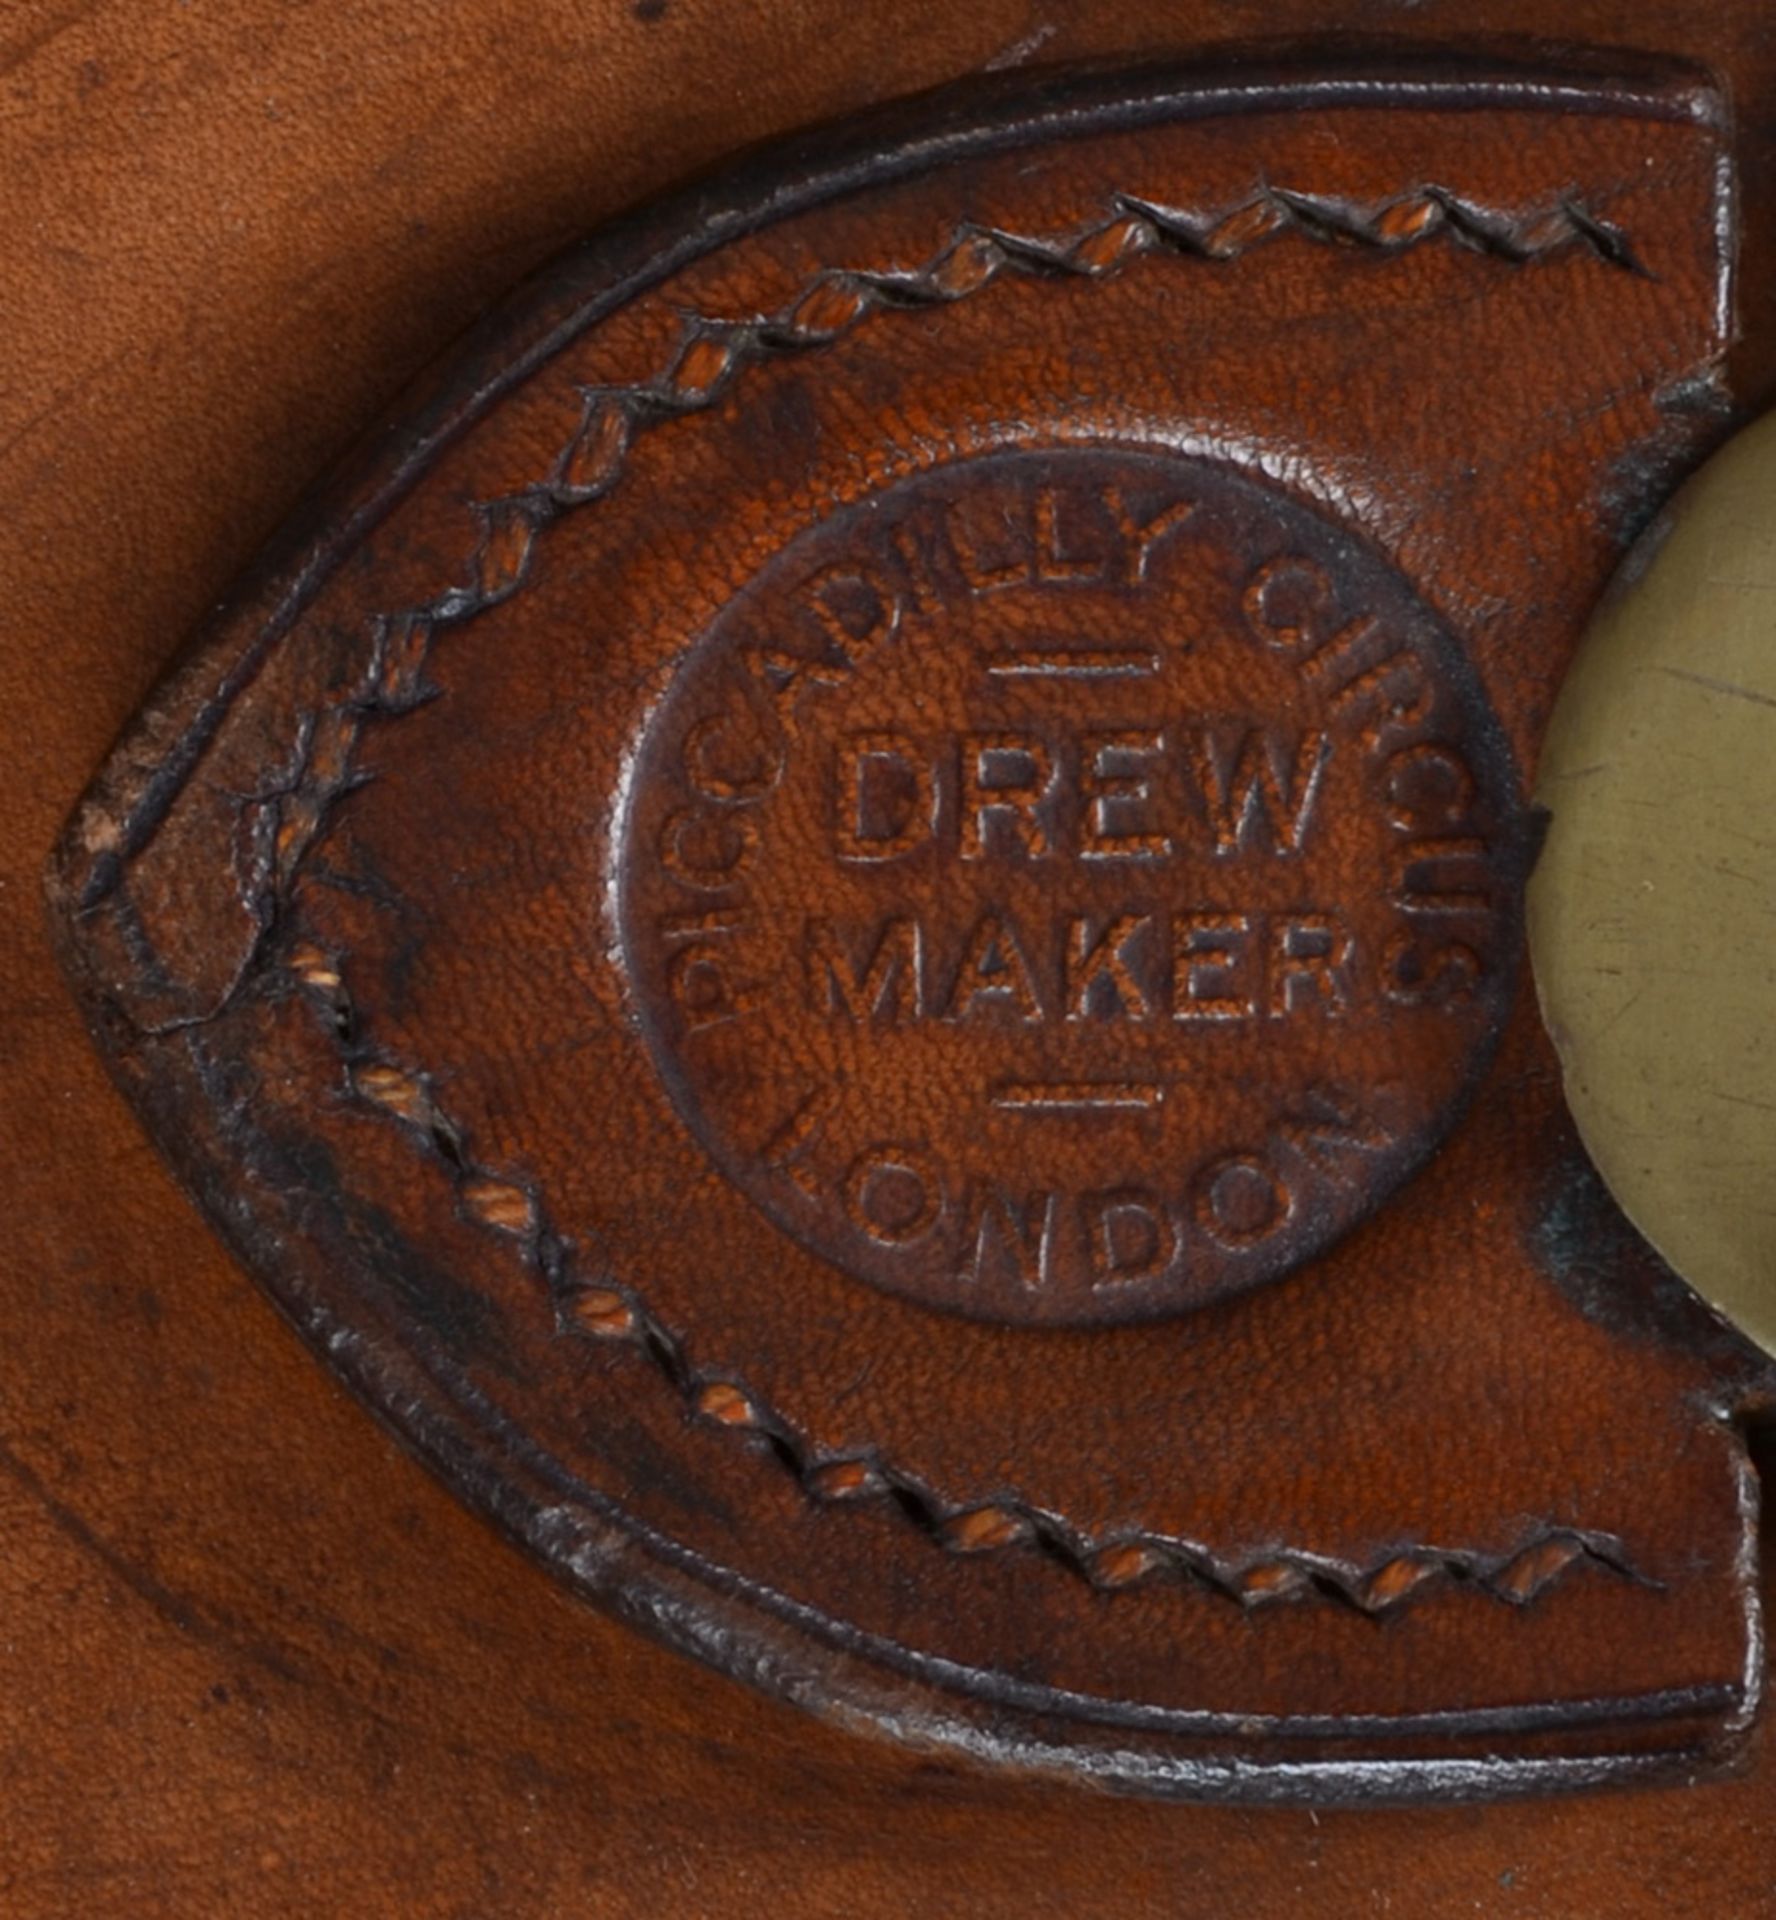 Zwei Reisekoffer. England 20. Jh. Leder, mit Bronzebeschlägen. Einer gemarkt „Drew & Sons Makers - Image 2 of 5